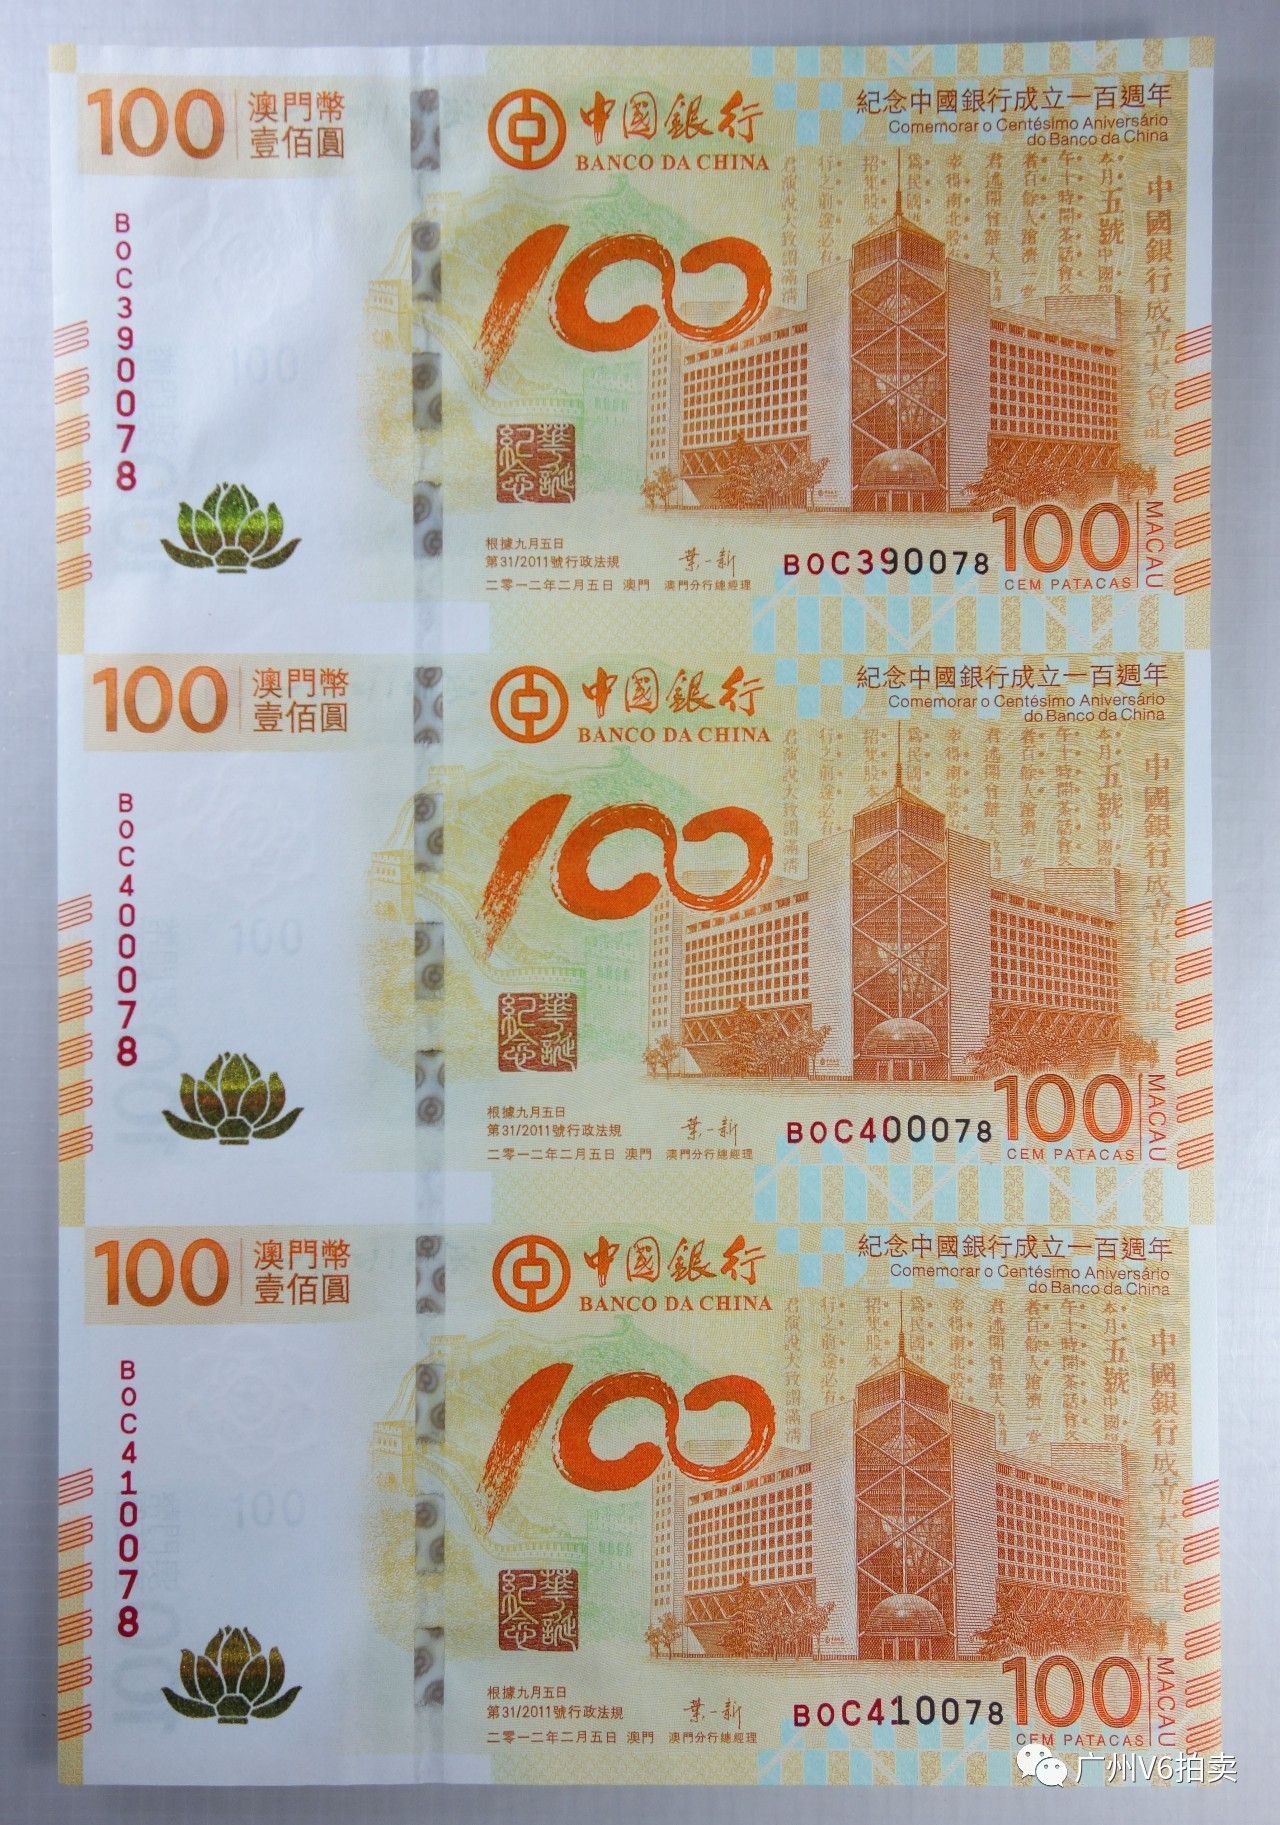 第18号拍品:中国银行成立一百年澳门币100元荷花纪念钞三连体带册全品